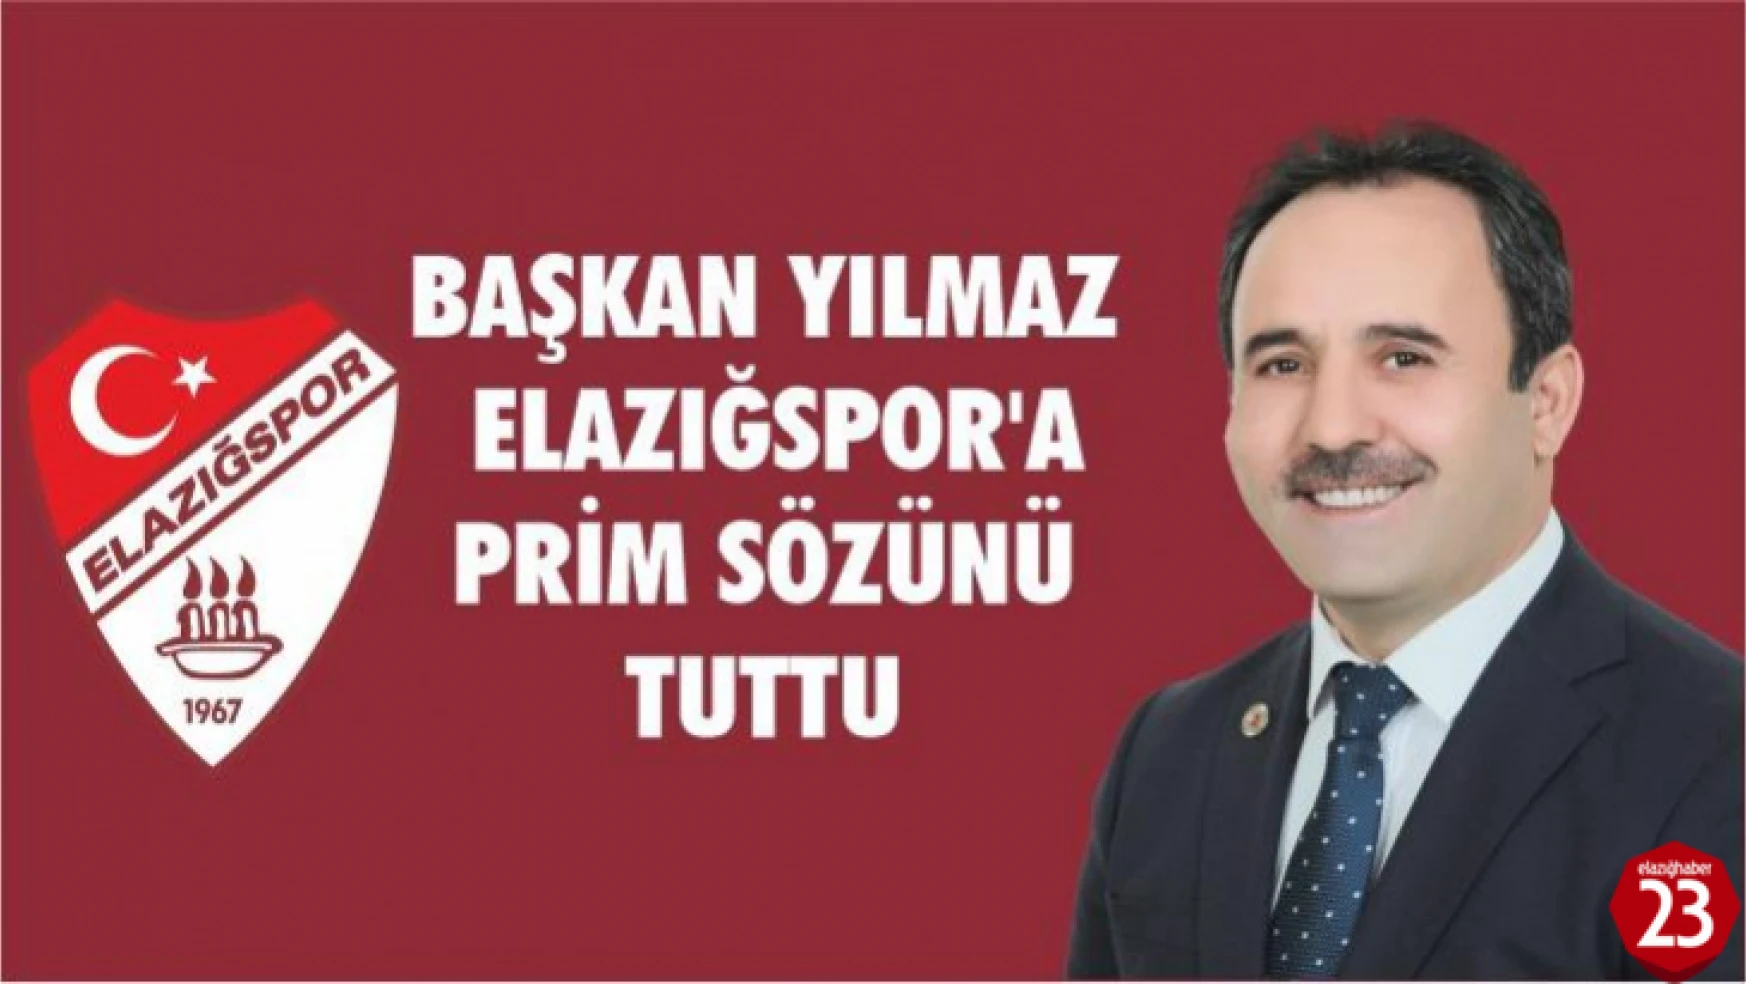 Başkan Yılmaz Elazığspor'a Prim Sözünü Tuttu